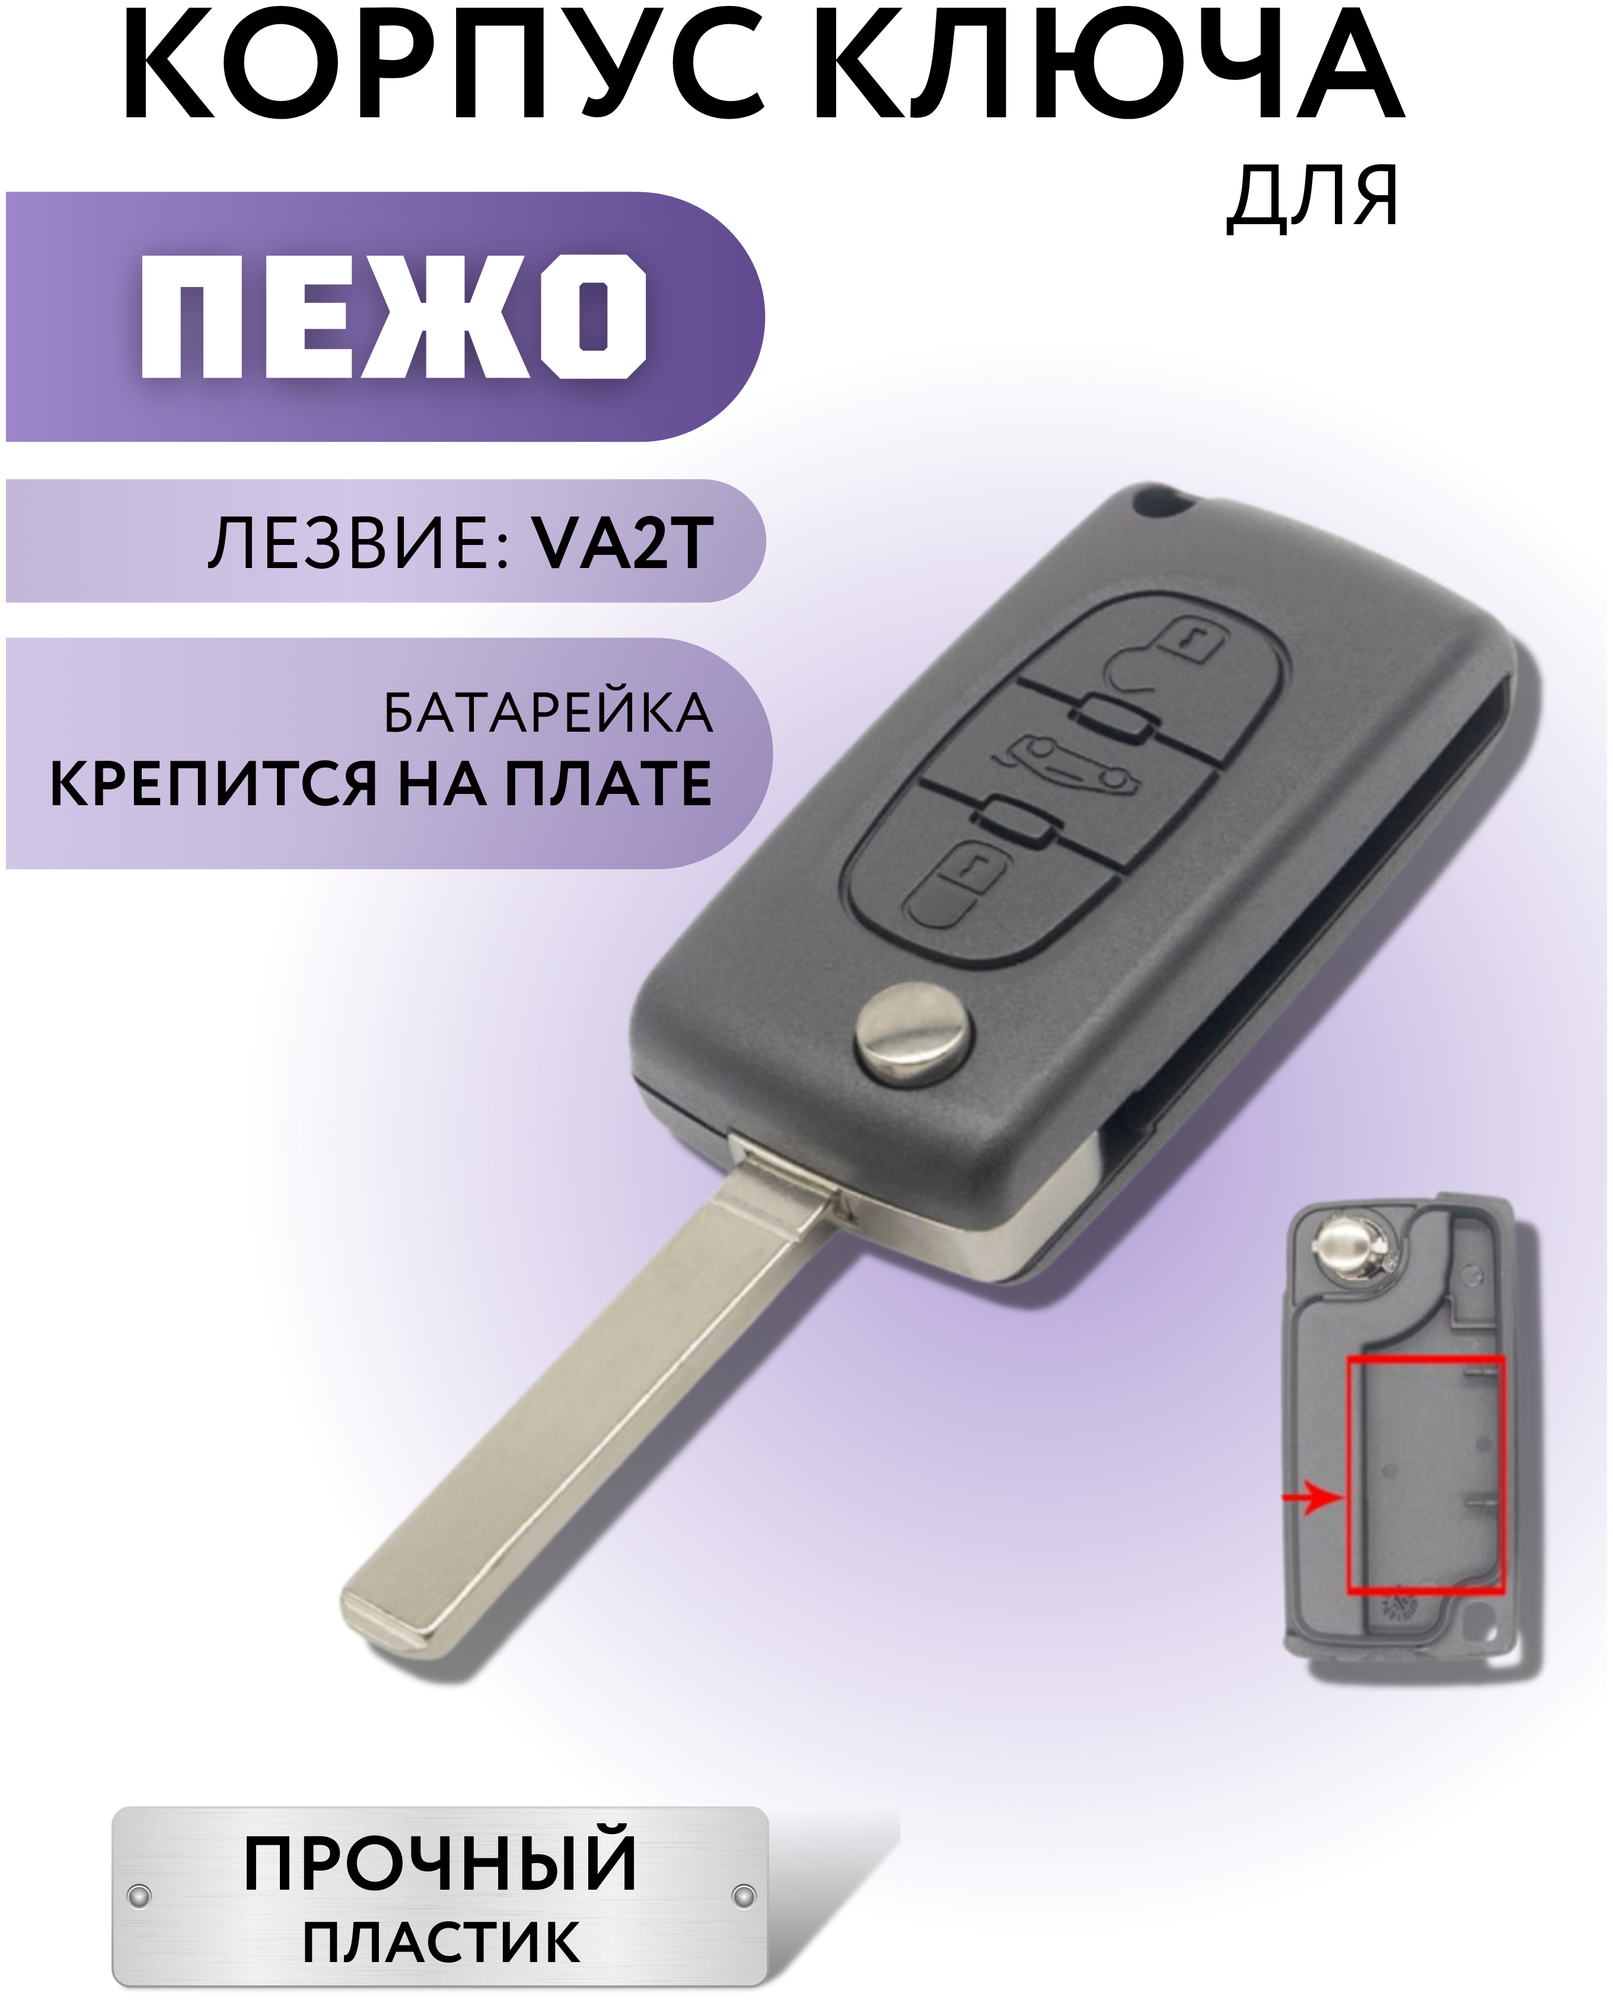 Корпус ключа зажигания для Пежо, корпус ключа для Peugeot, 3 кнопки, батарейка на плате, лезвие VA2T